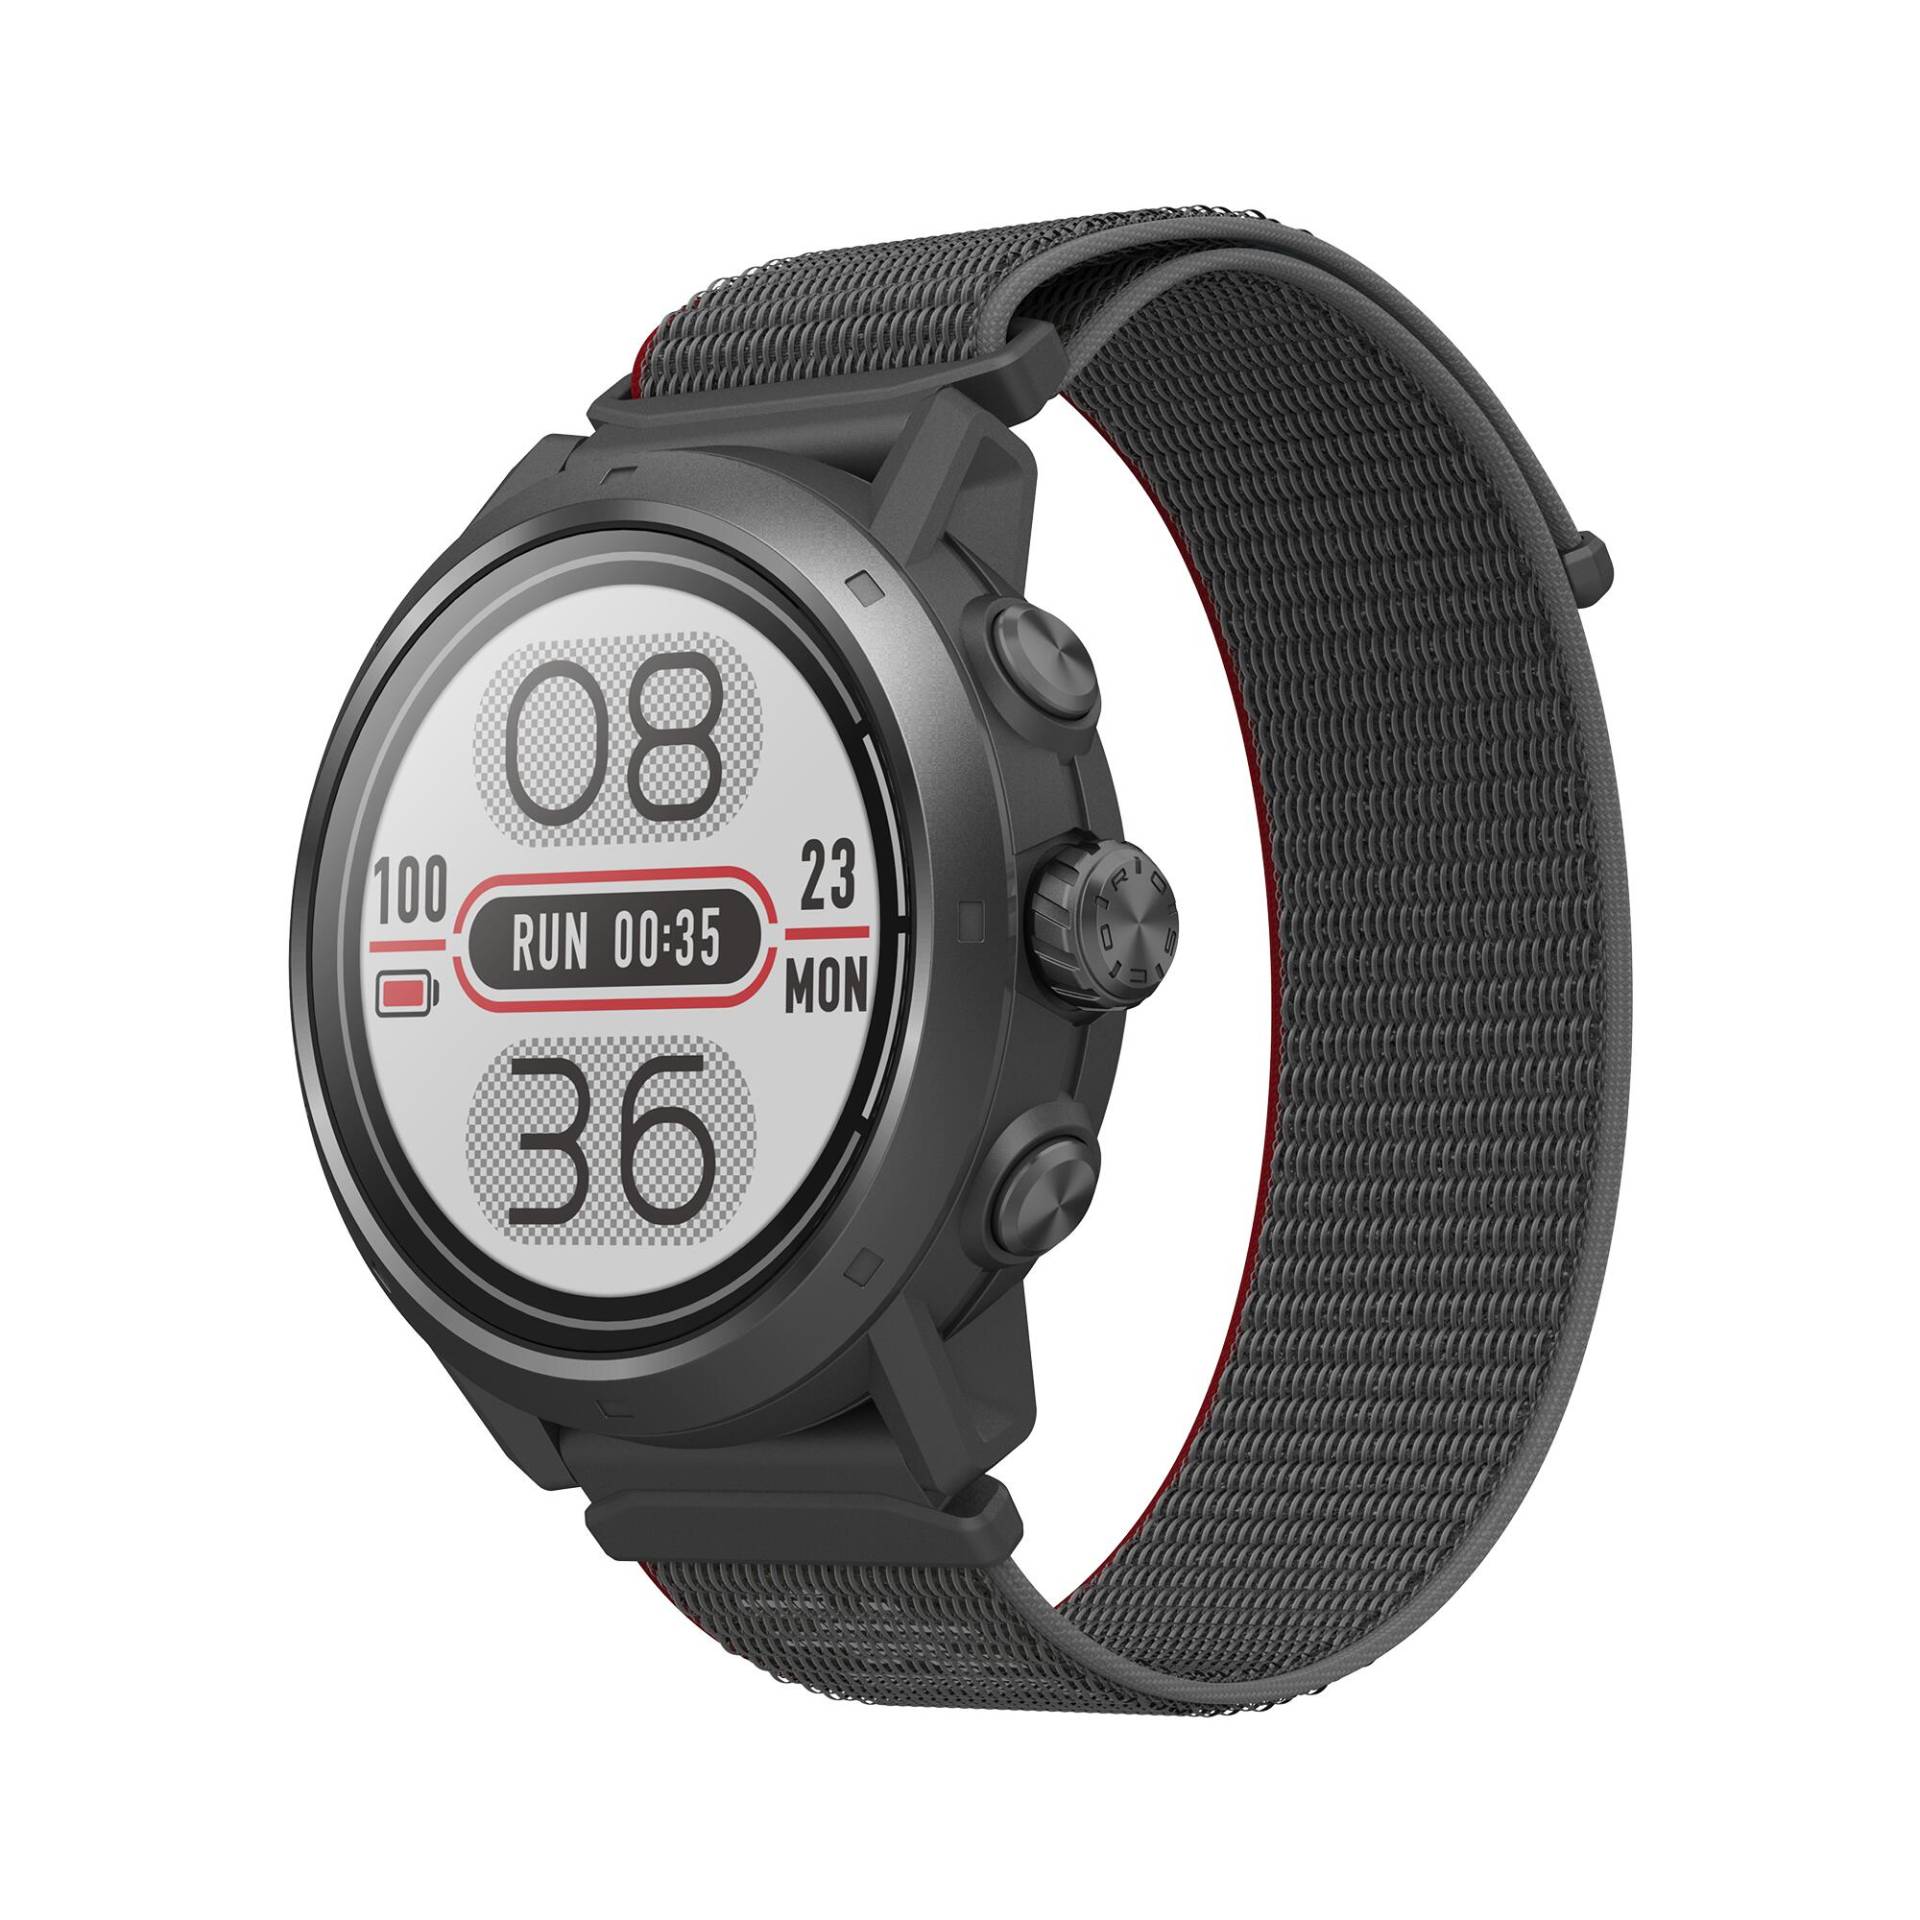 GPS-Uhr Smartwatch Laufen Outdoor mit Herzfrequenzmessung Coros - Apex 2 Pro von COROS